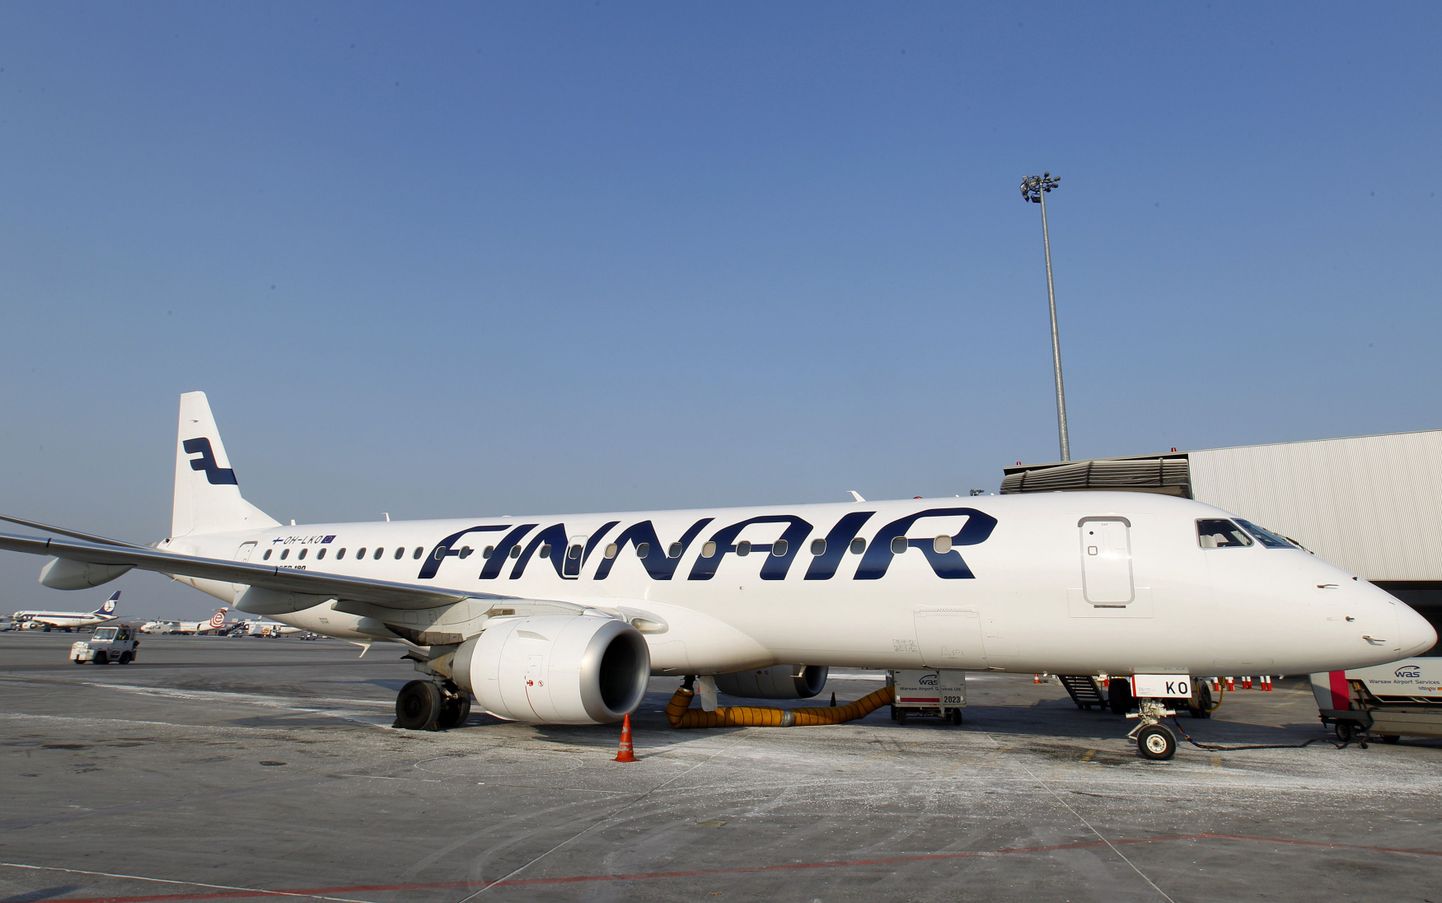 Самолет Finnair. Иллюстративное фото.